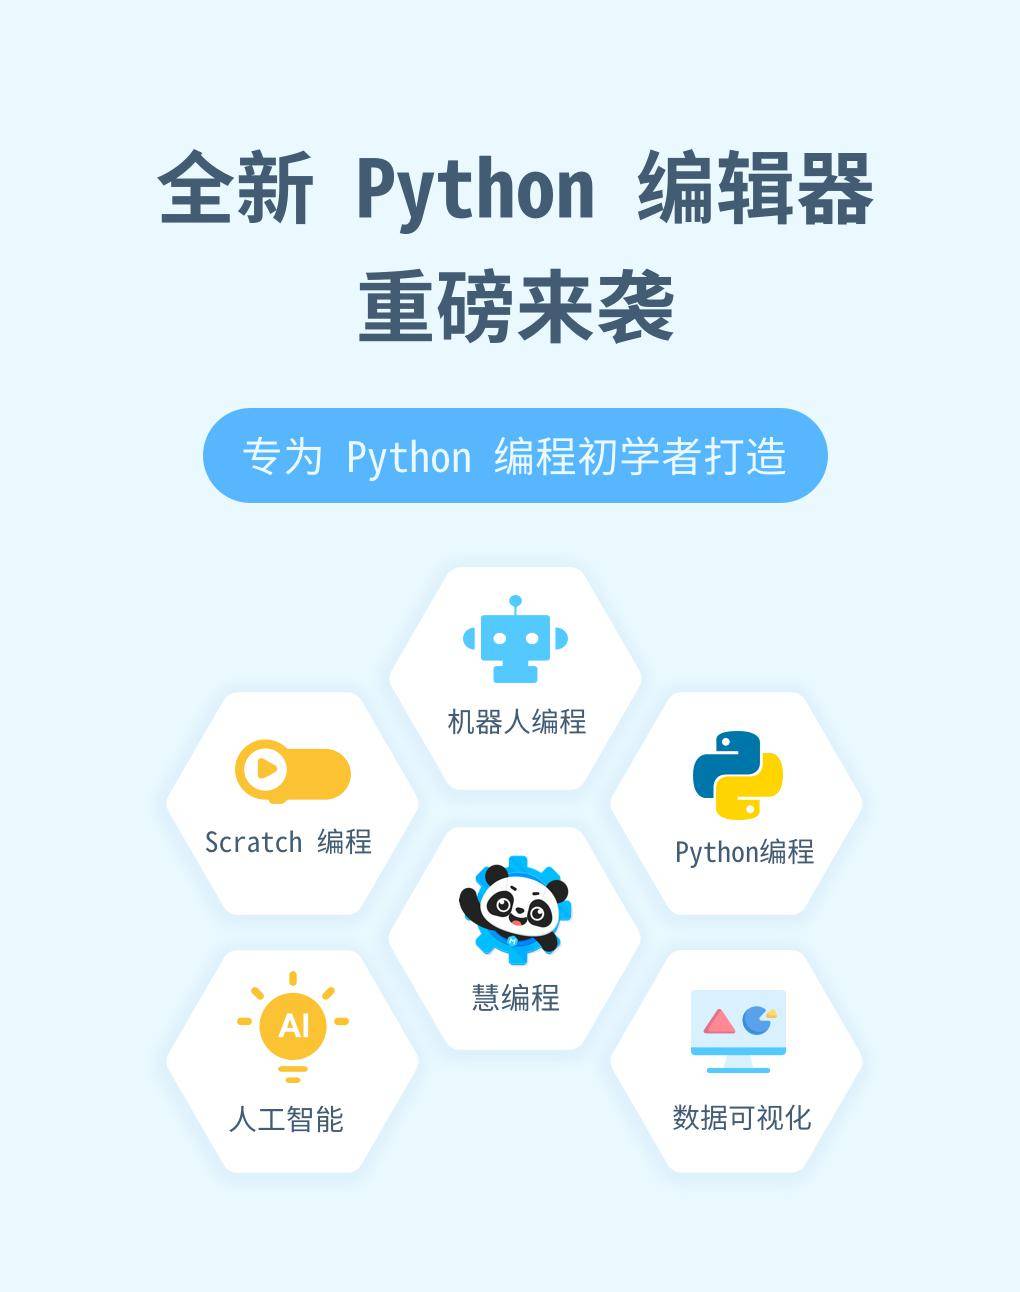 童心制物慧编程全新 python 编辑器正式上线